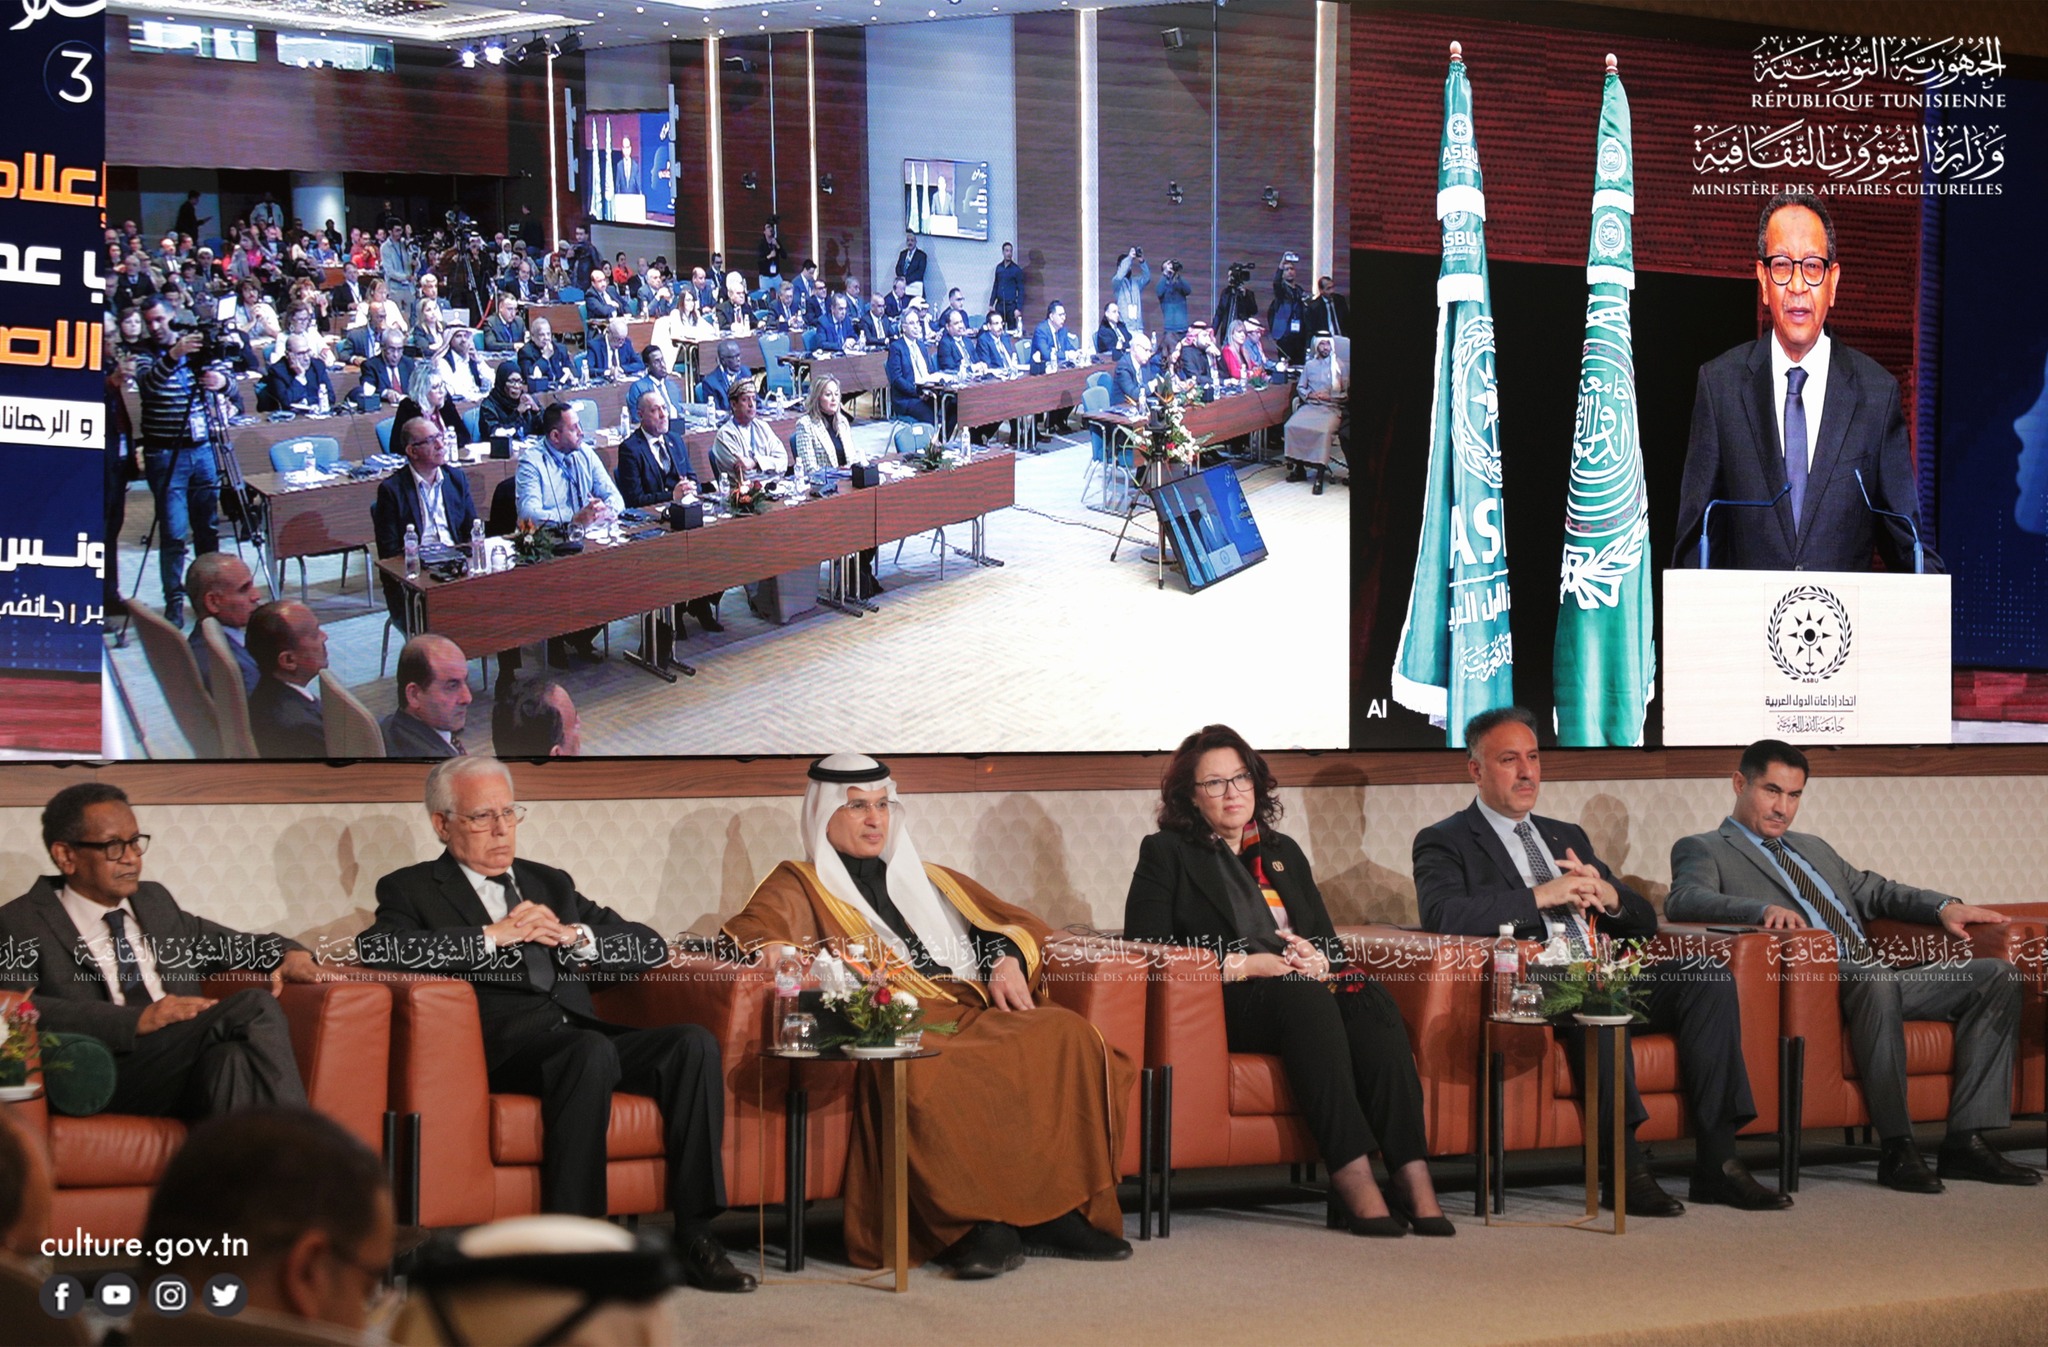 المؤتمر الثالث للإعلام العربي: الذكاء الاصطناعي أصبح واقعا جديدا يستوجب تشريعات ووسائل حماية 